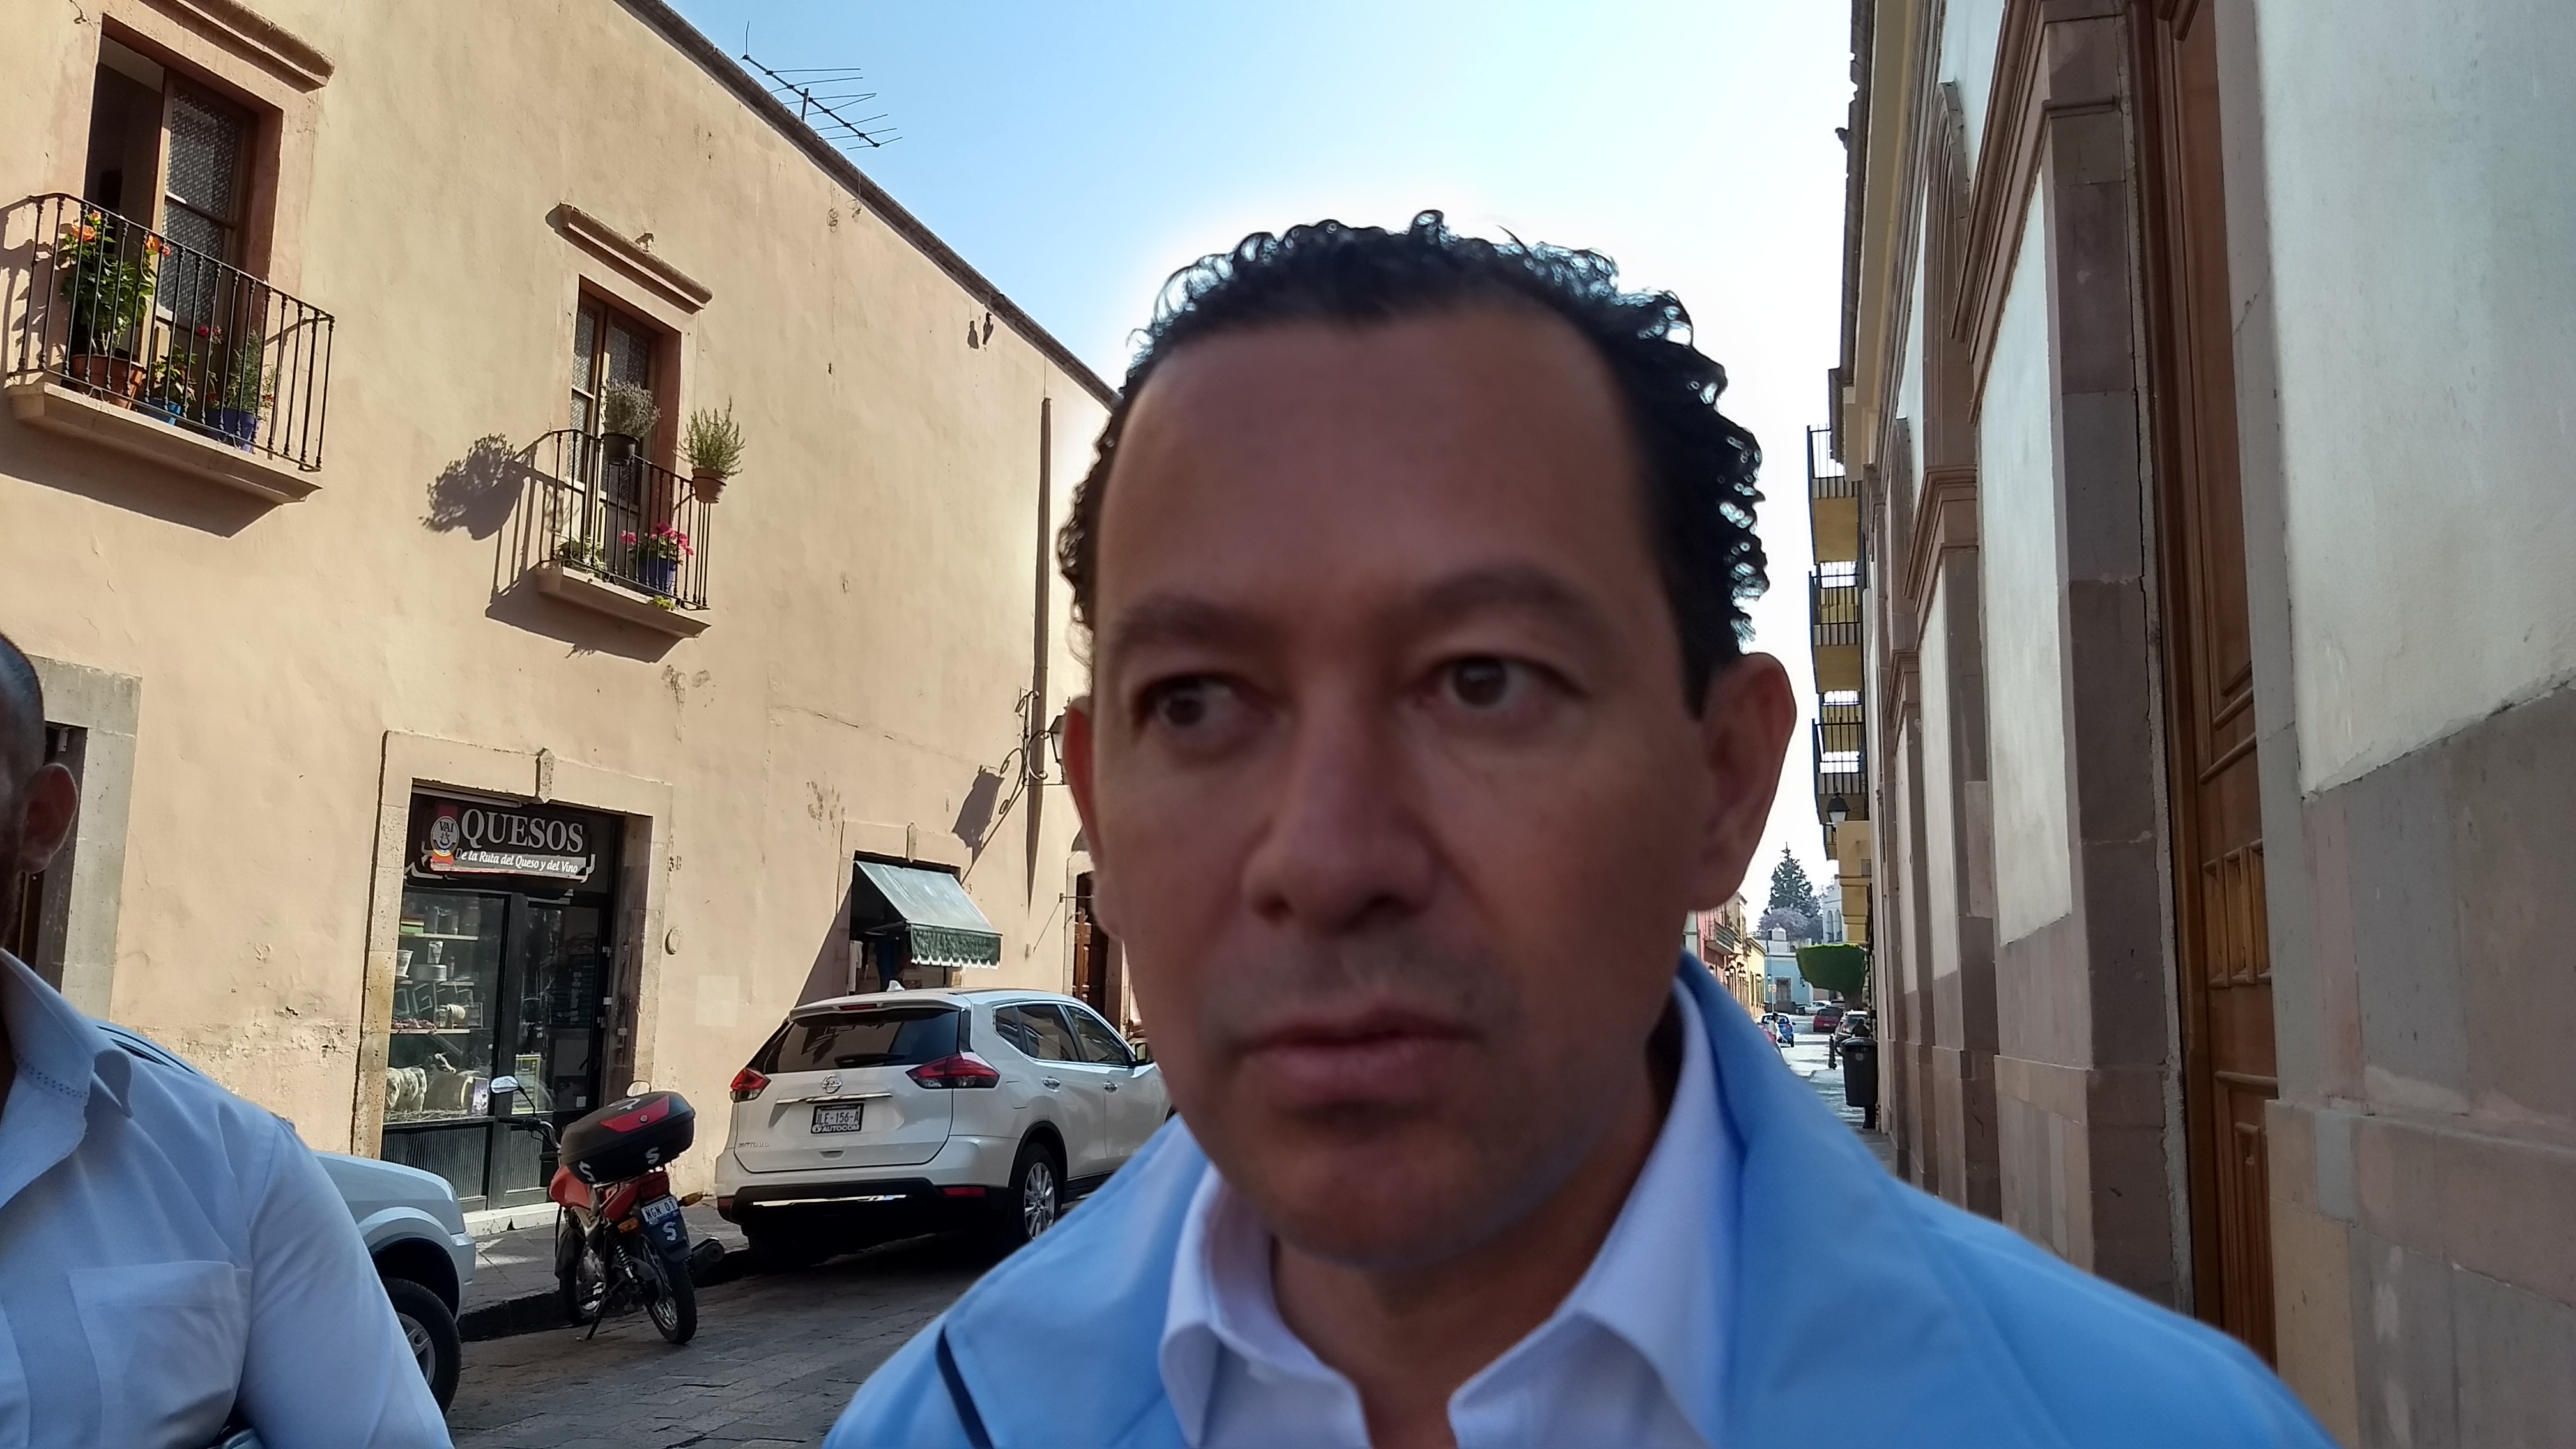  Alejandro Cano promete gestionar recursos para el tercer distrito